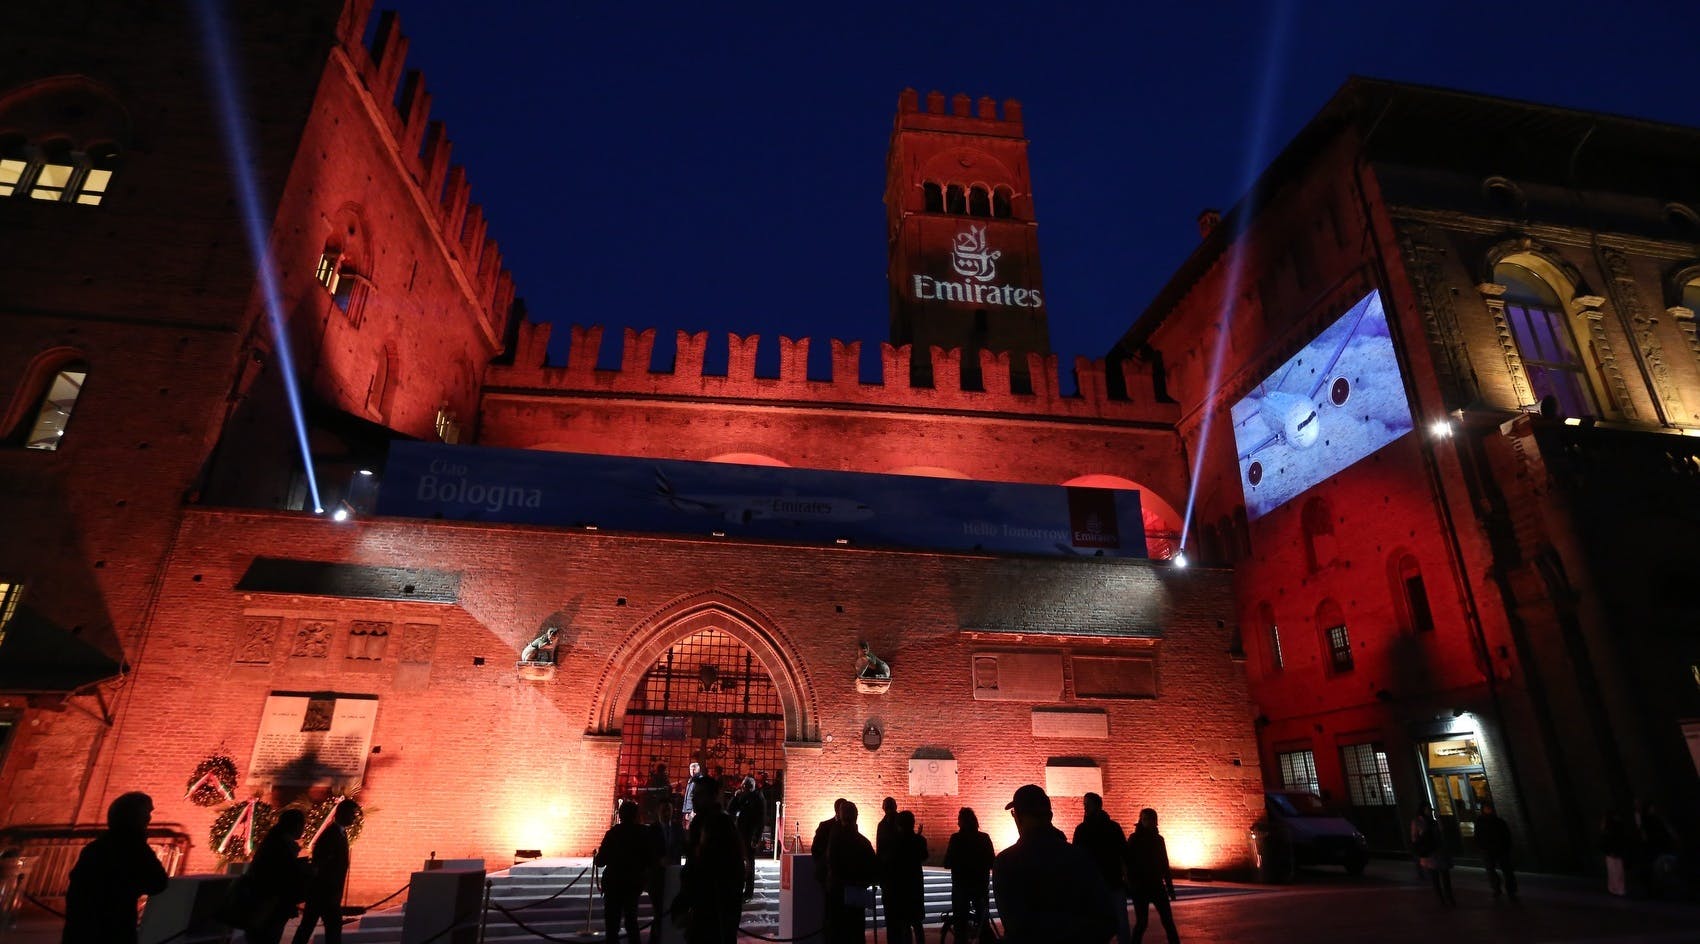 palazzo re enzo a bologna evento serale con luci proiezioni emirates